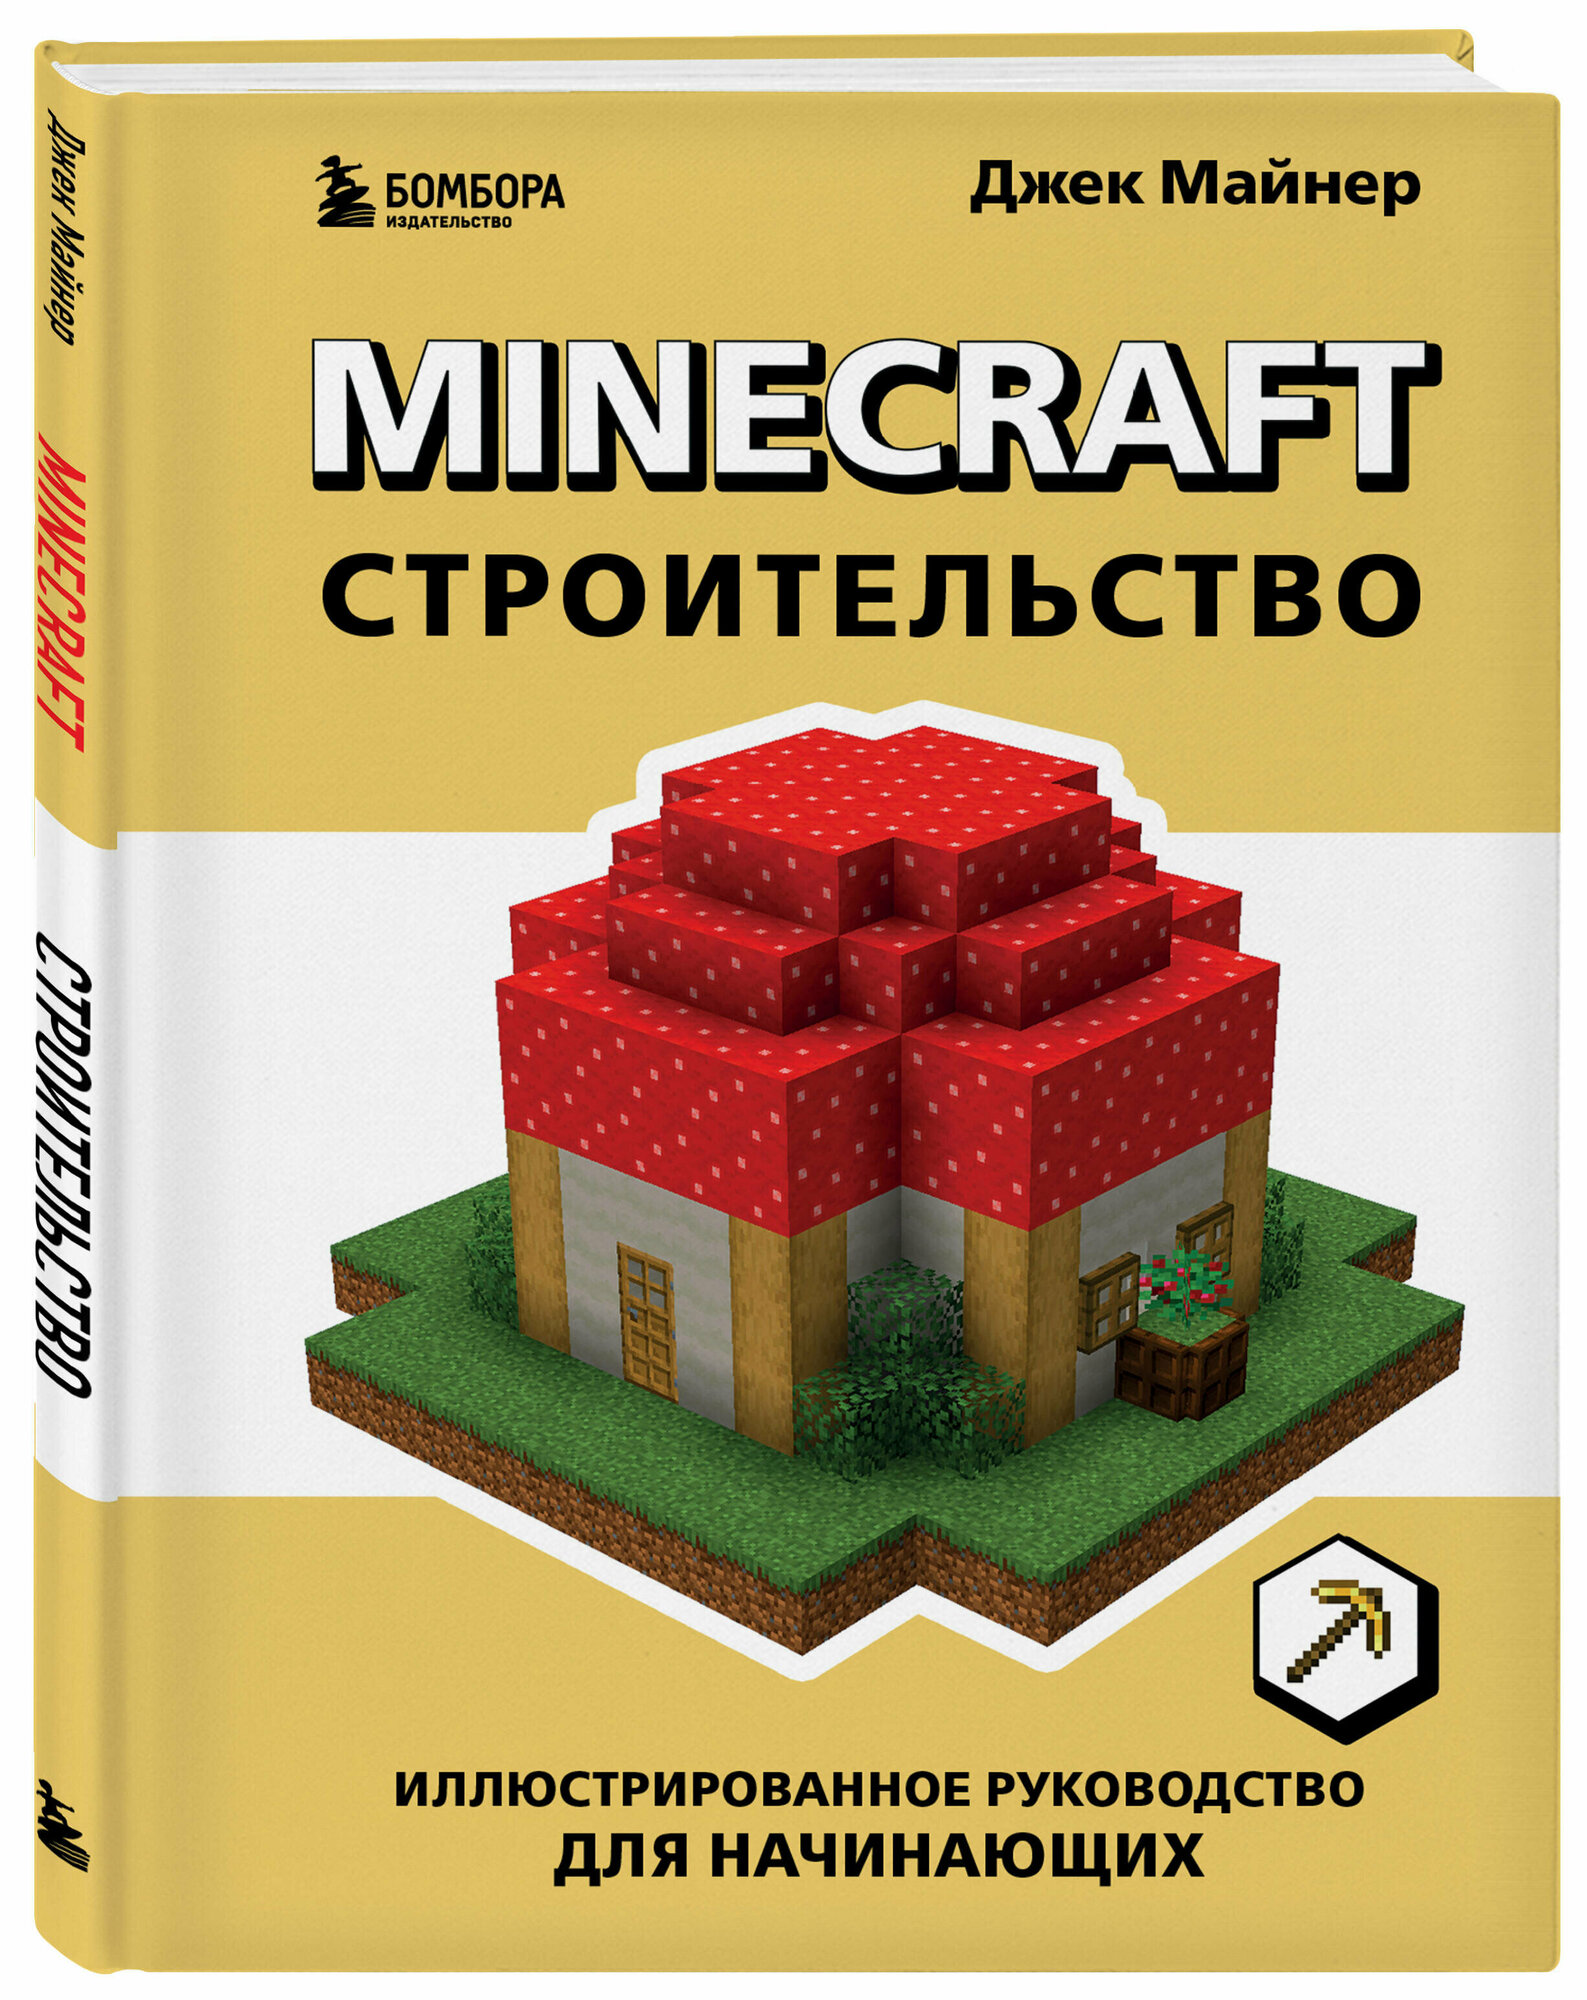 Майнер Д. Minecraft. Строительство. Иллюстрированное руководство для начинающих